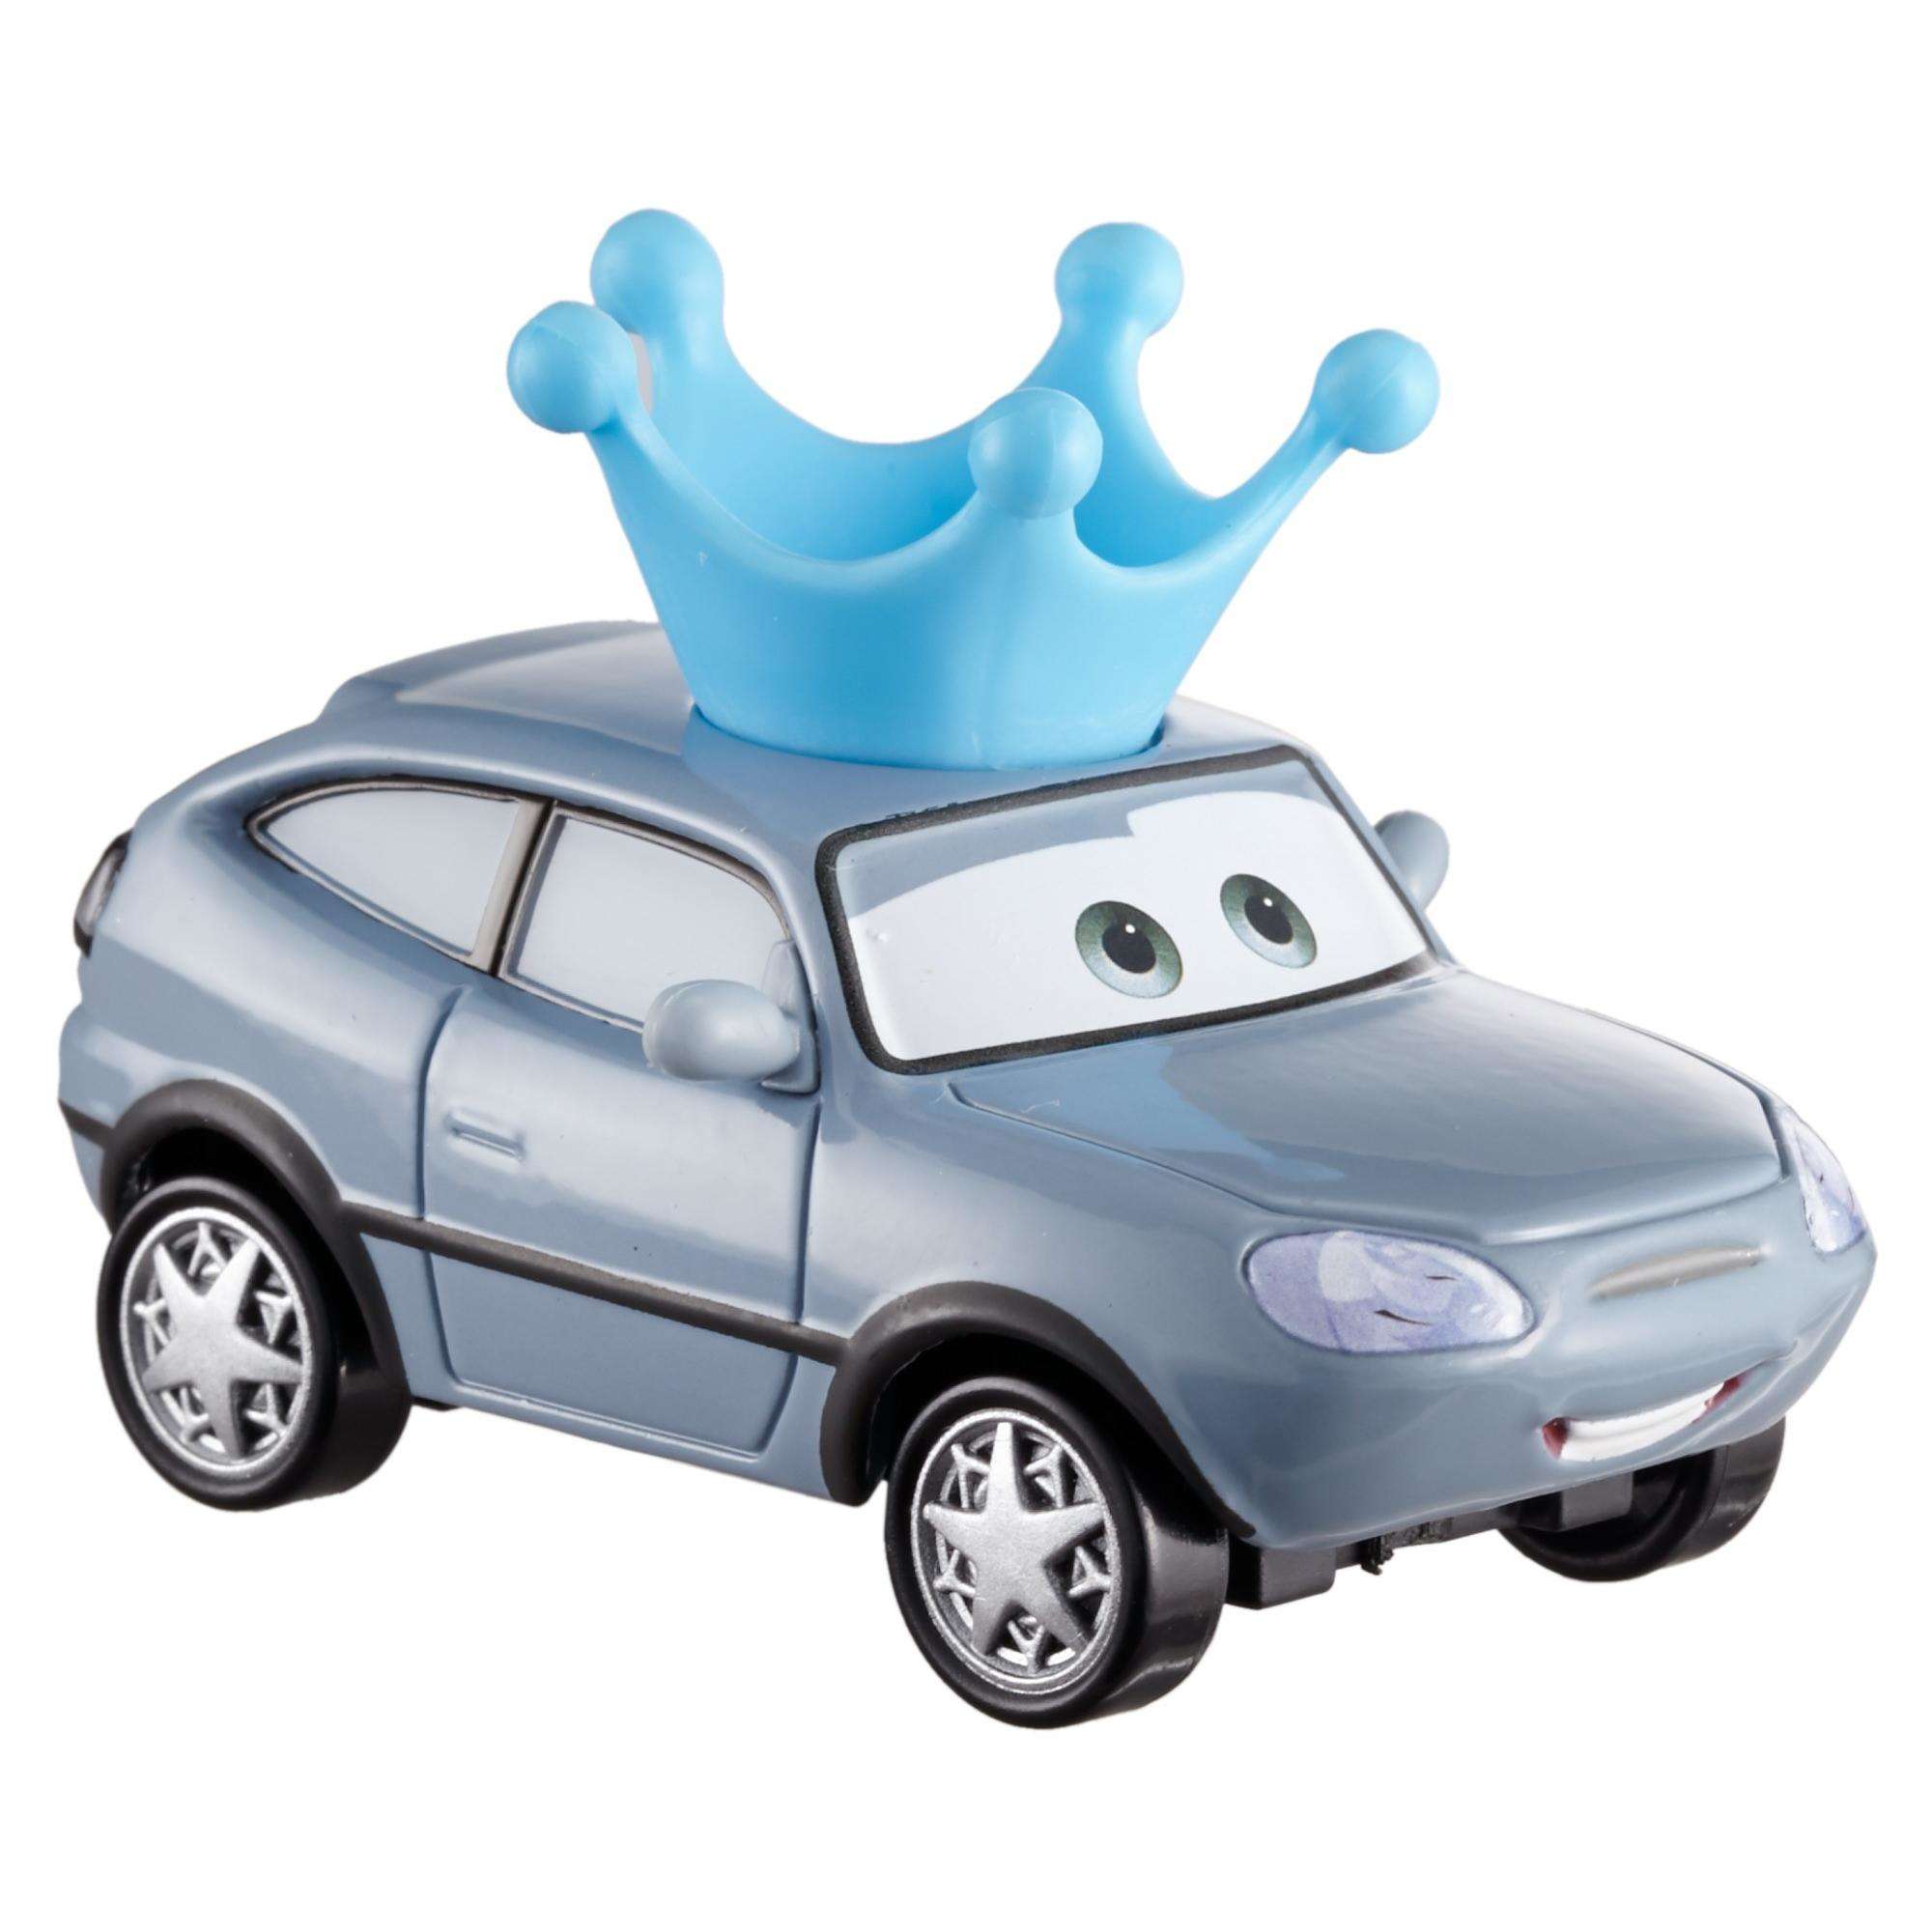 Disney/Pixar Cars Darla Vanderson Die-Cast Vehicle - image 3 of 5